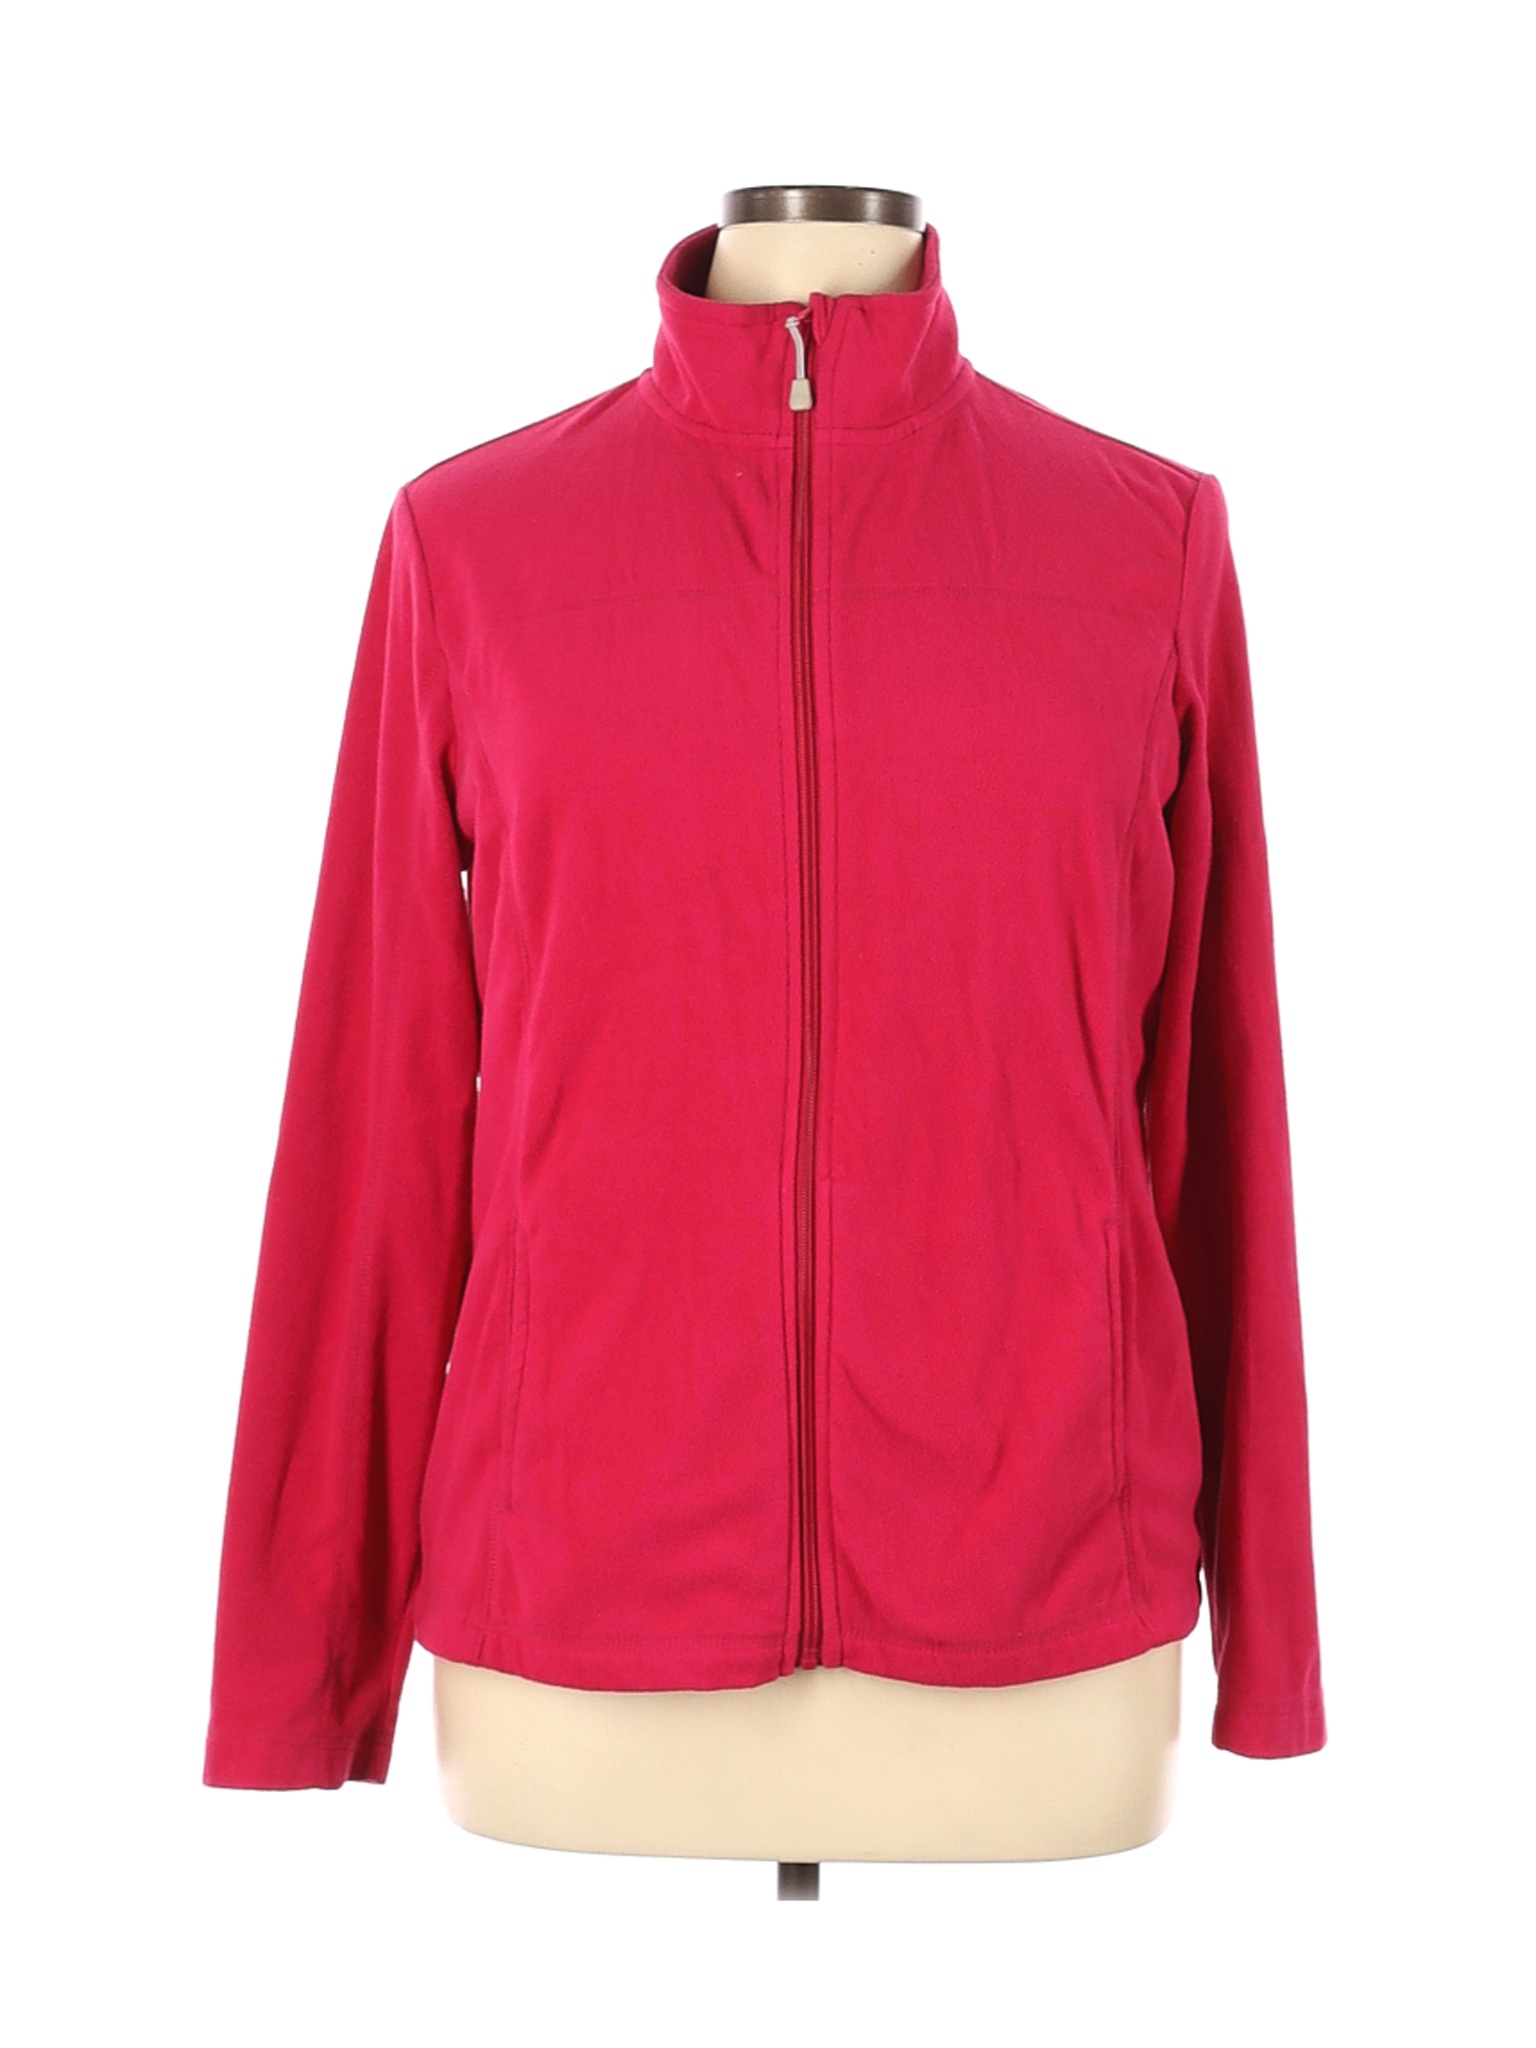 Danskin Now Women Red Fleece XL | eBay